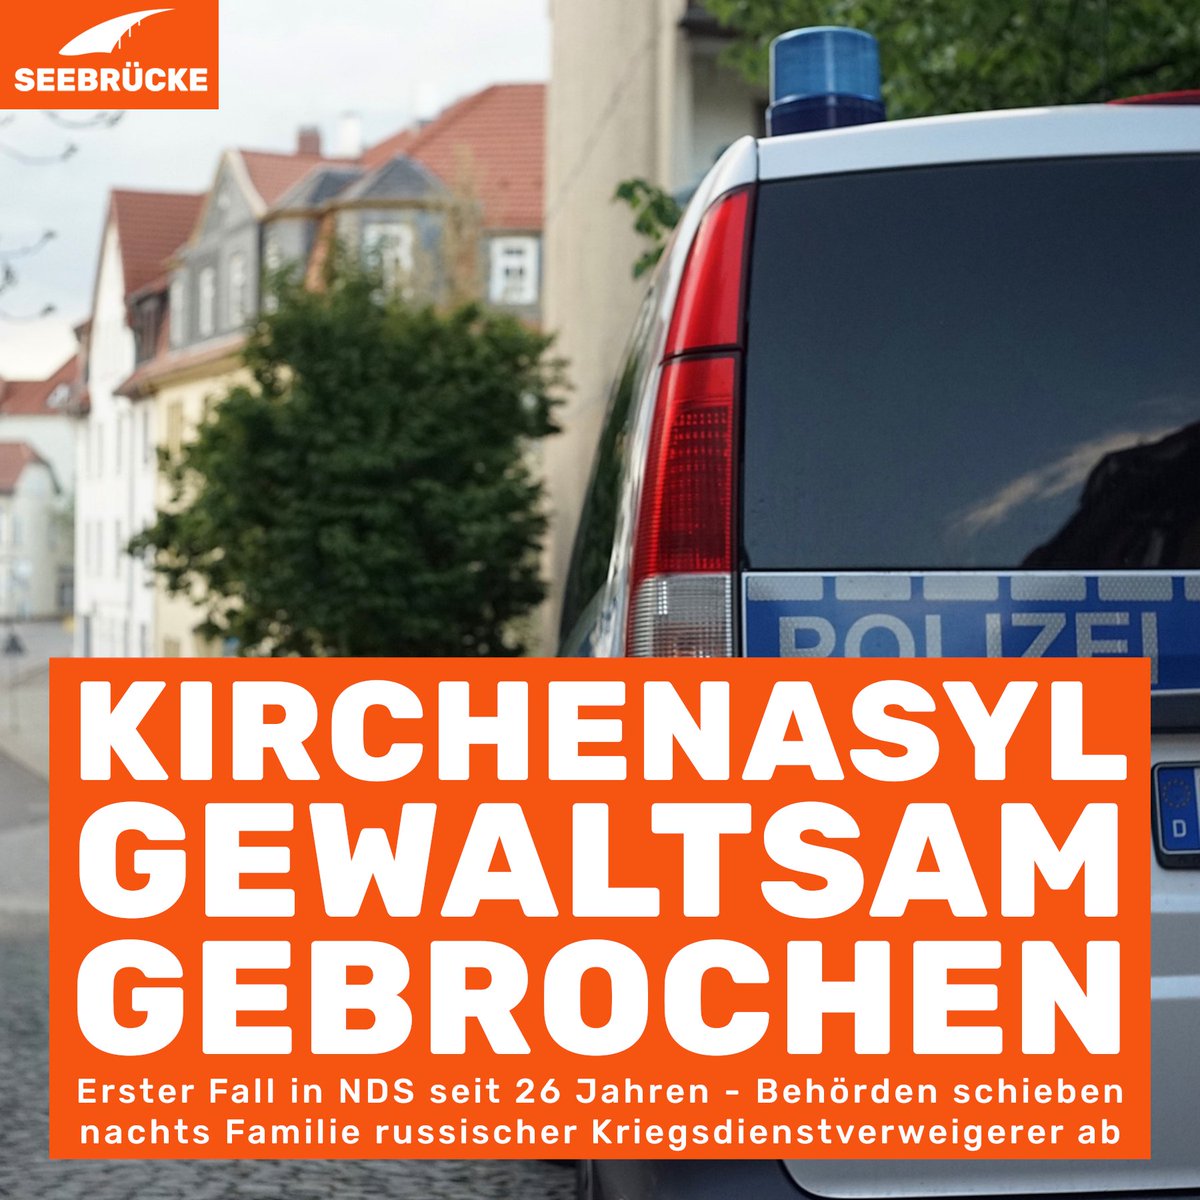 In der Nacht von vergangenem Sonntag auf Montag drang die Polizei in Niedersachsen das erste Mal seit 26 Jahren gewaltsam in eine Kirche ein, um eine Abschiebung durchzuführen. #Kirchenasyl